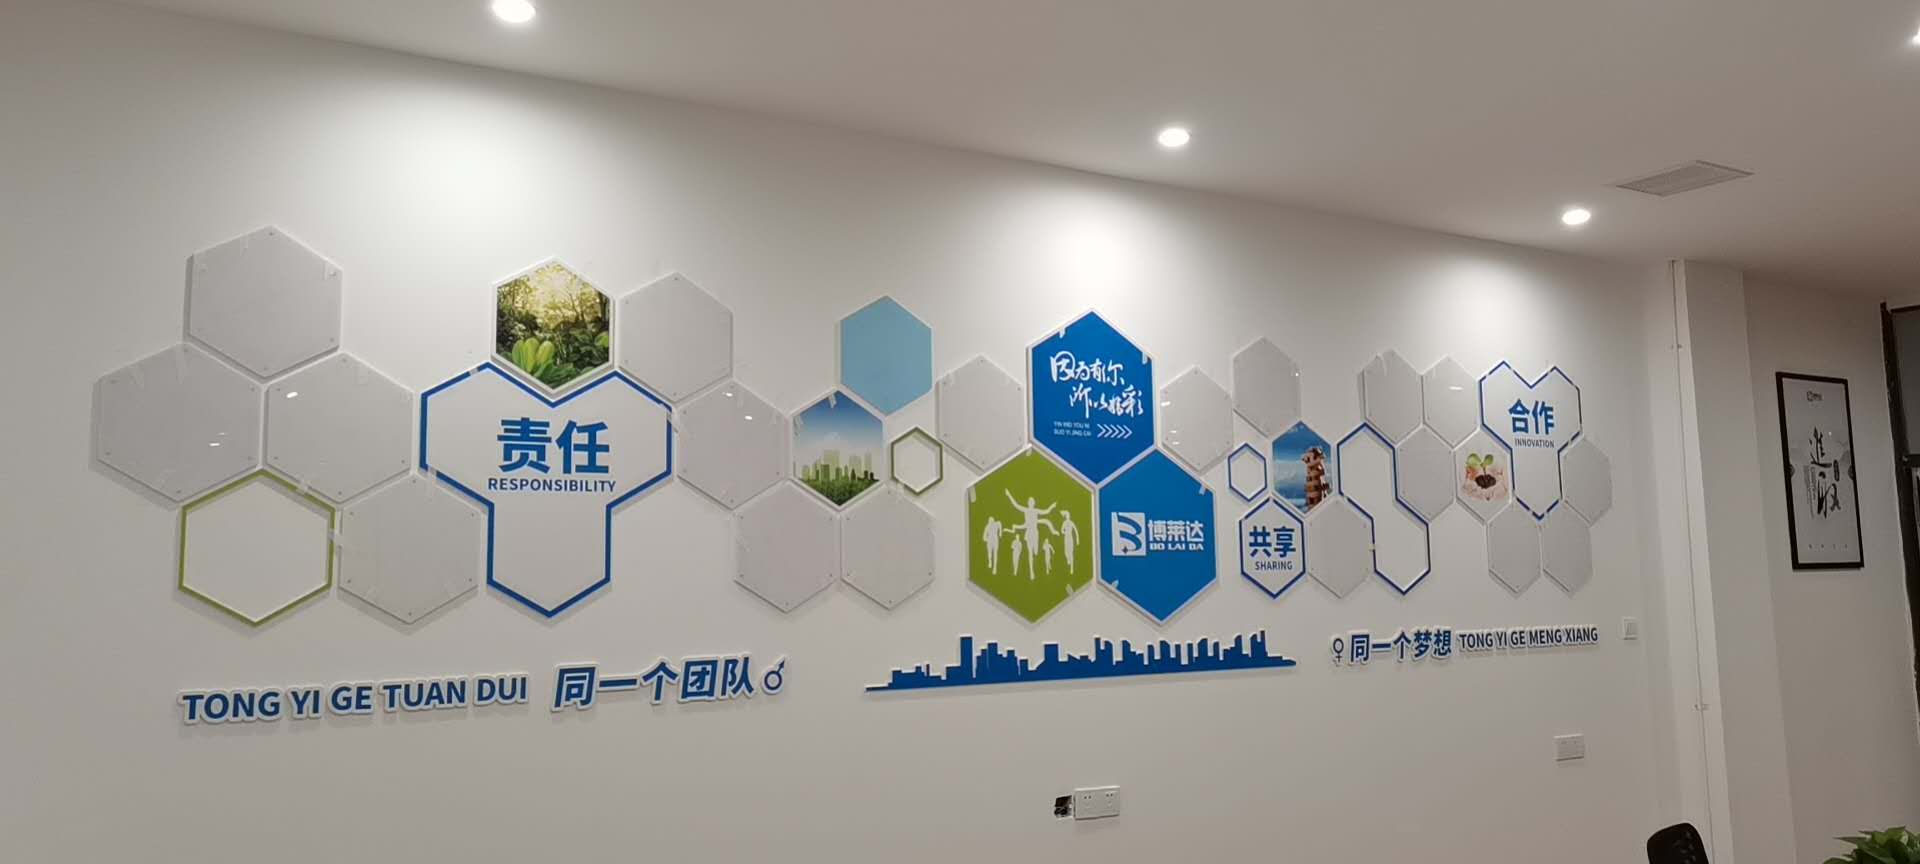 武汉创意汇广告公司给江西博莱达安装文化墙